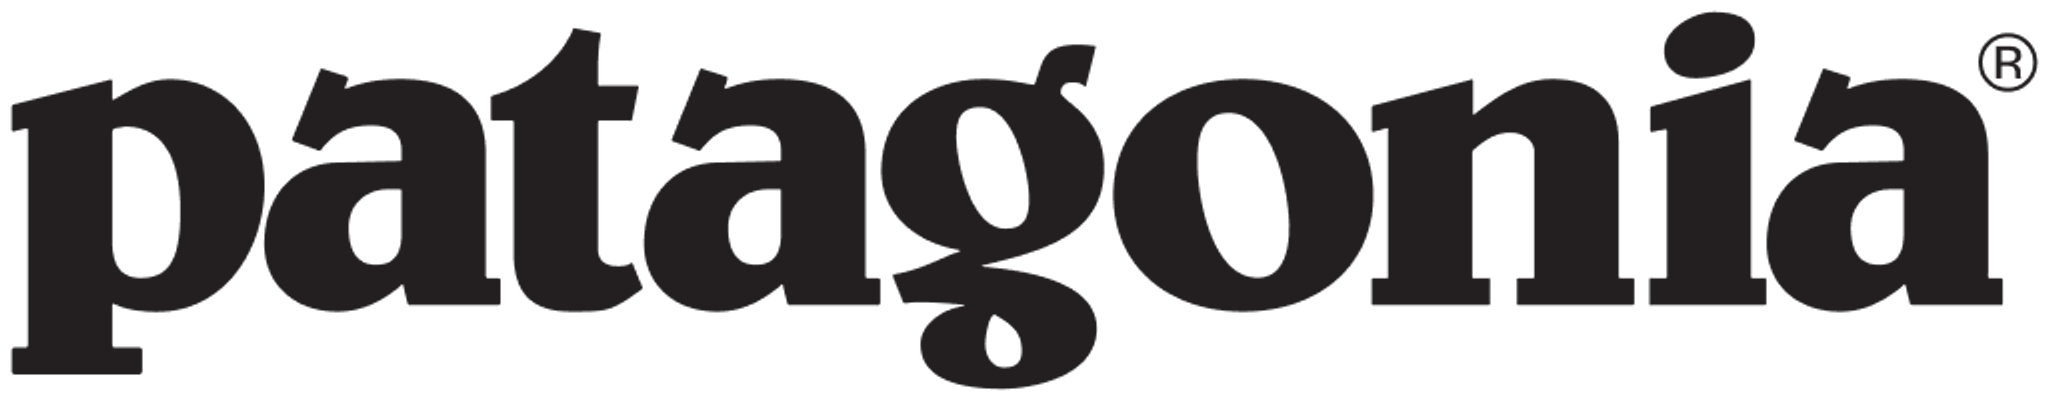 Patagonia_Unternehmen_logo